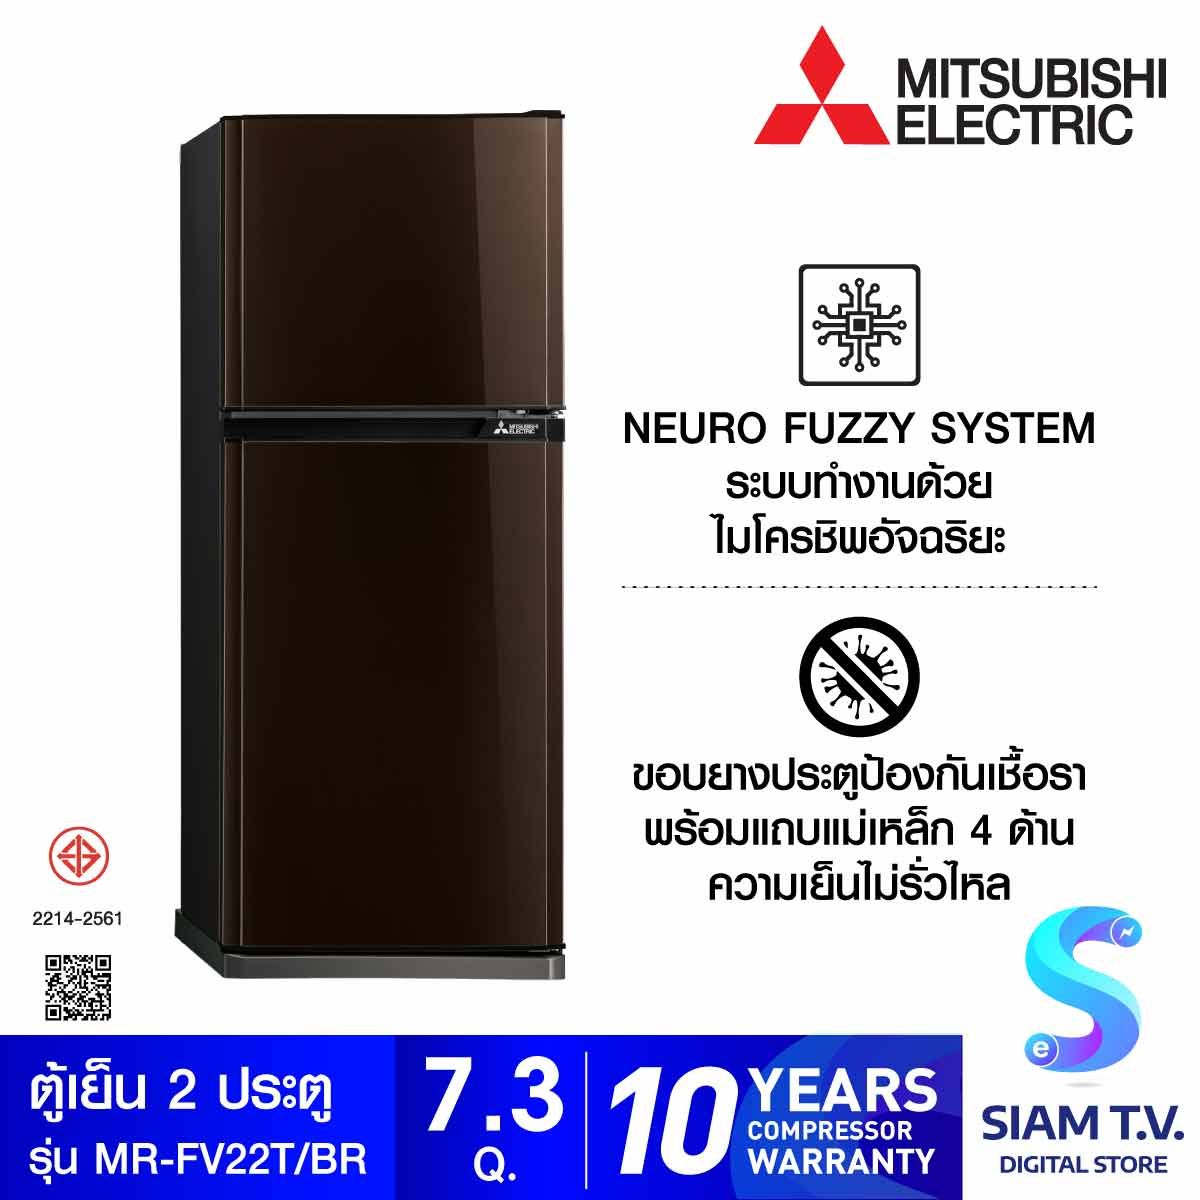 MITSUBISHI ELECTRIC ตู้เย็น 2 ประตู 7.3คิว MINUS ION สีน้ำตาลคอปเปอร์ รุ่น MR-FV22T